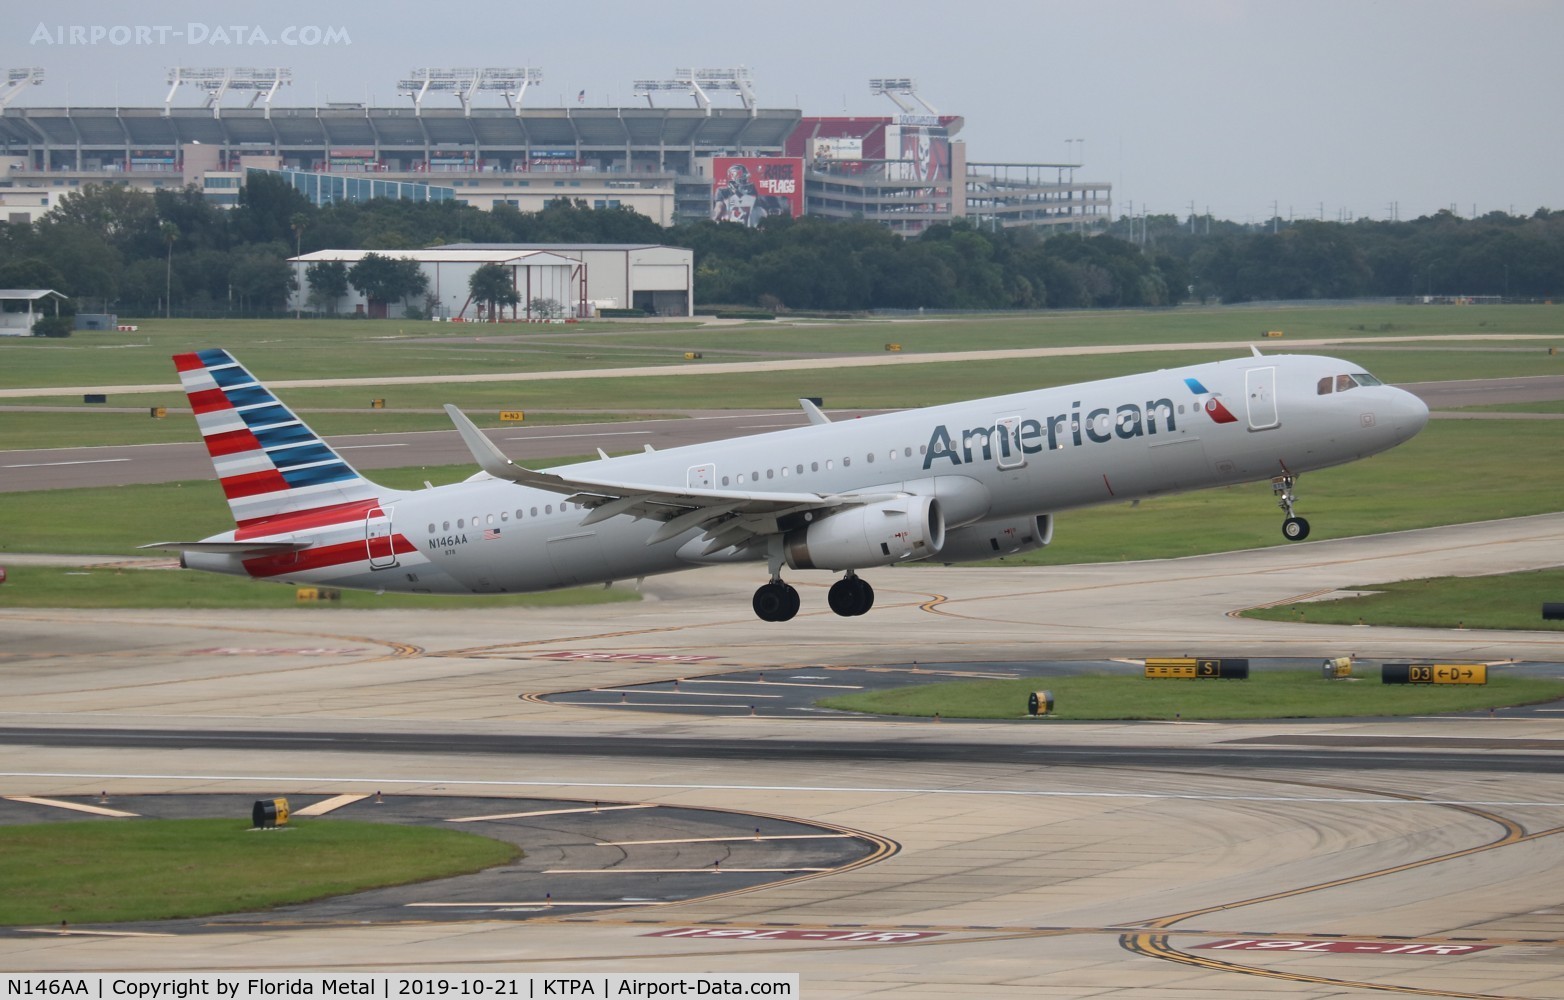 N146AA, 2015 Airbus A321-231 C/N 6761, American